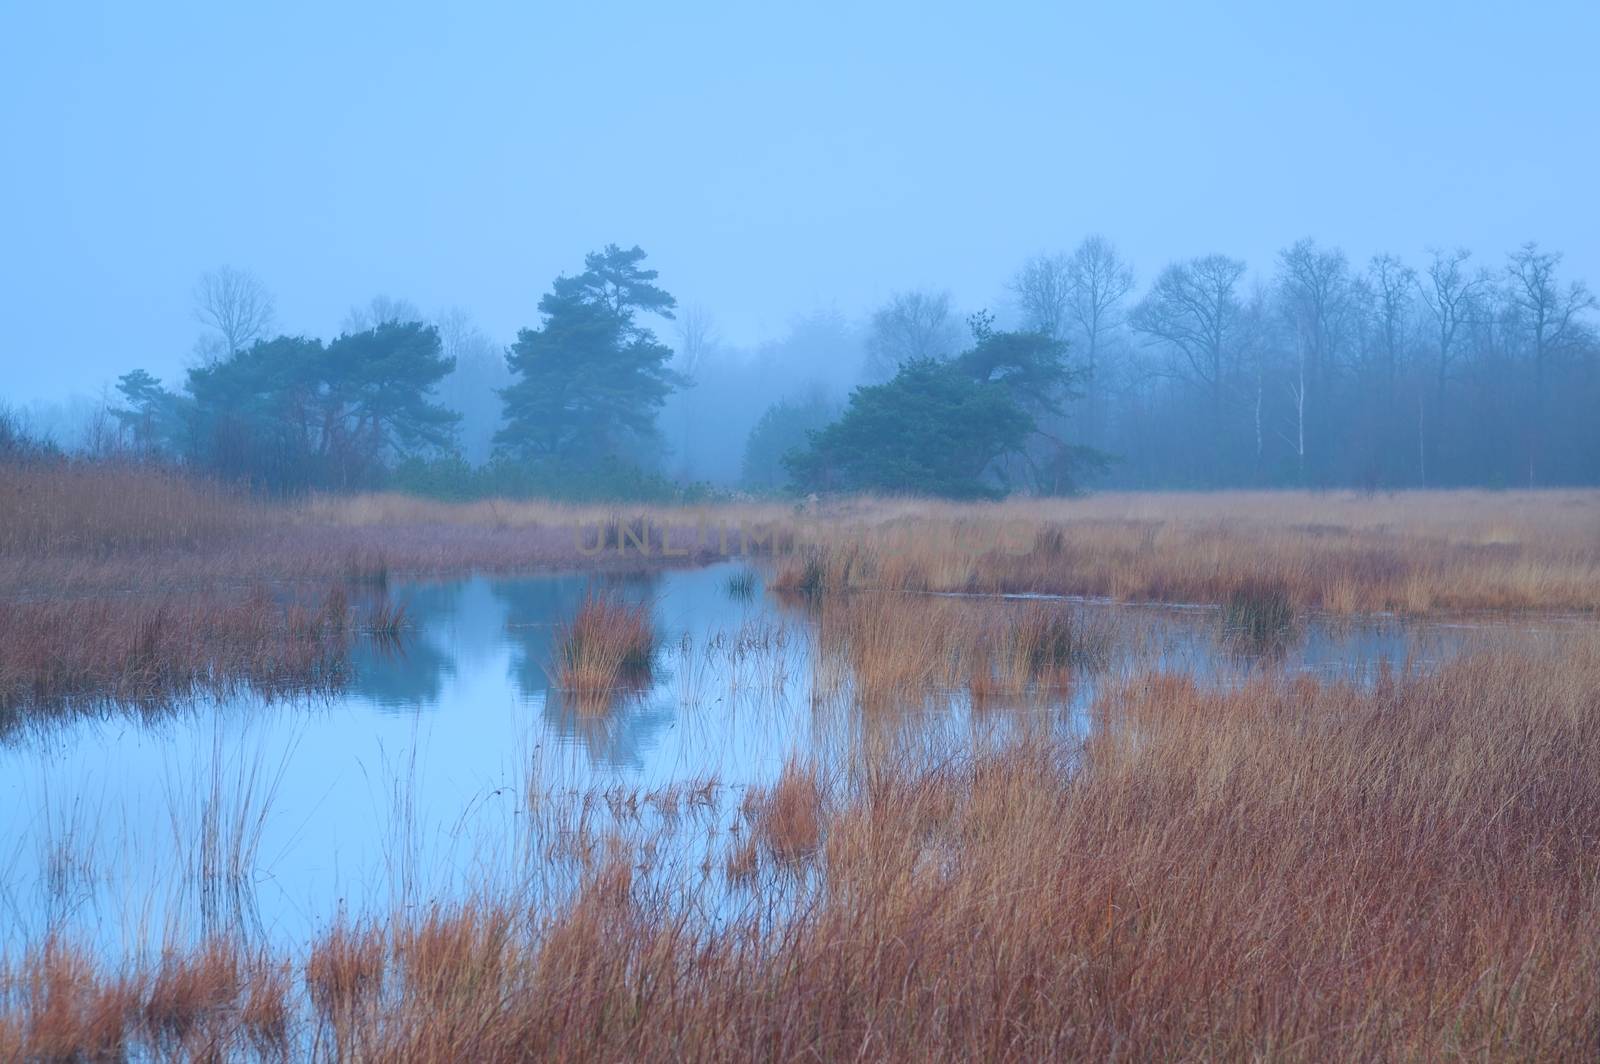 autumn fog over swamp, Mandefijld, Friesland, Netherlands